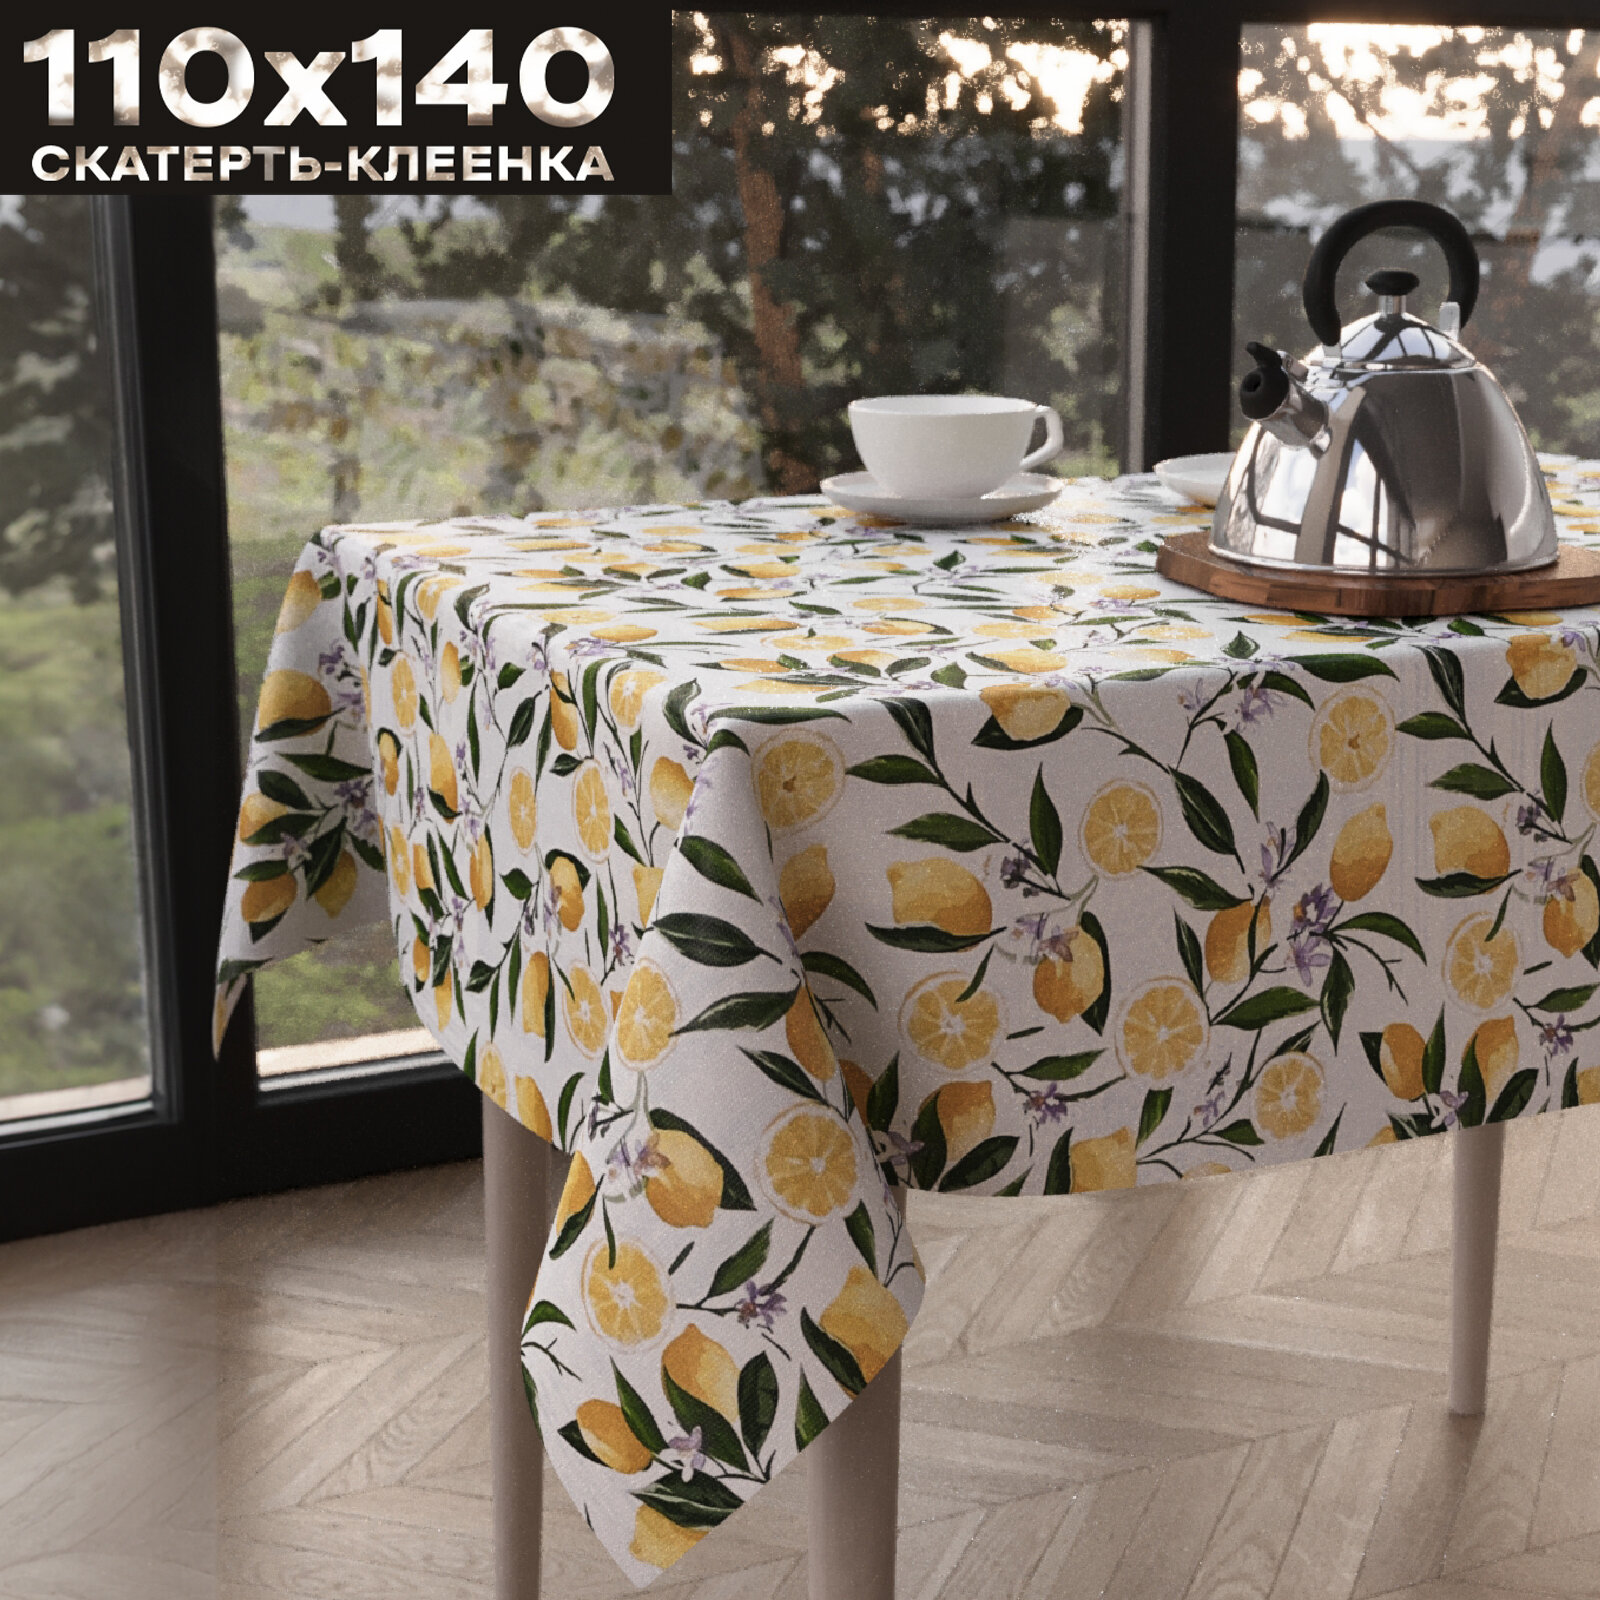 Скатерть на стол Zodchy 140 х 110 см, ПВХ, прямоугольная, белая, с лимонами